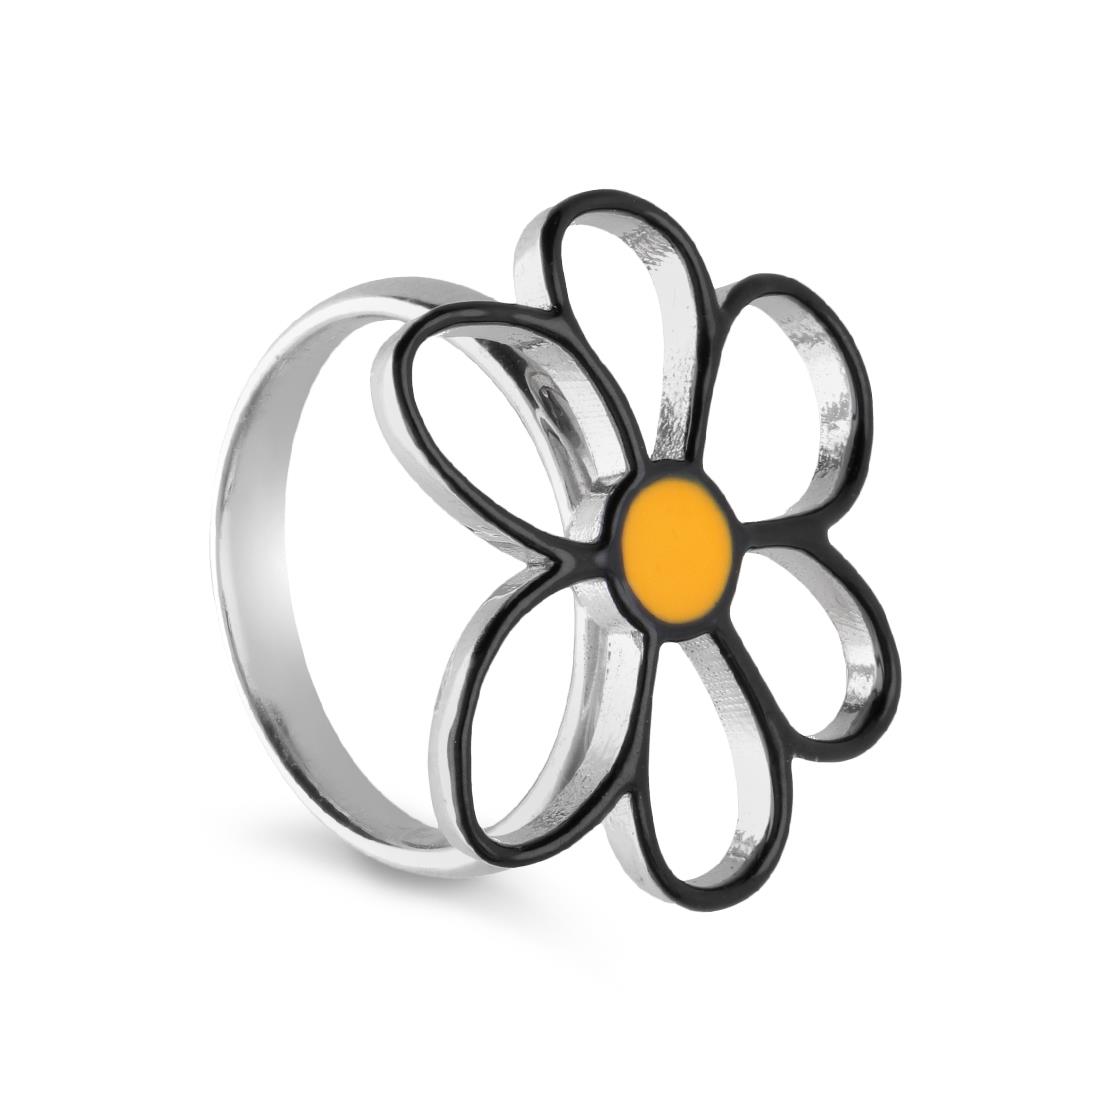 Daisy silver ring with empty petals - GURU